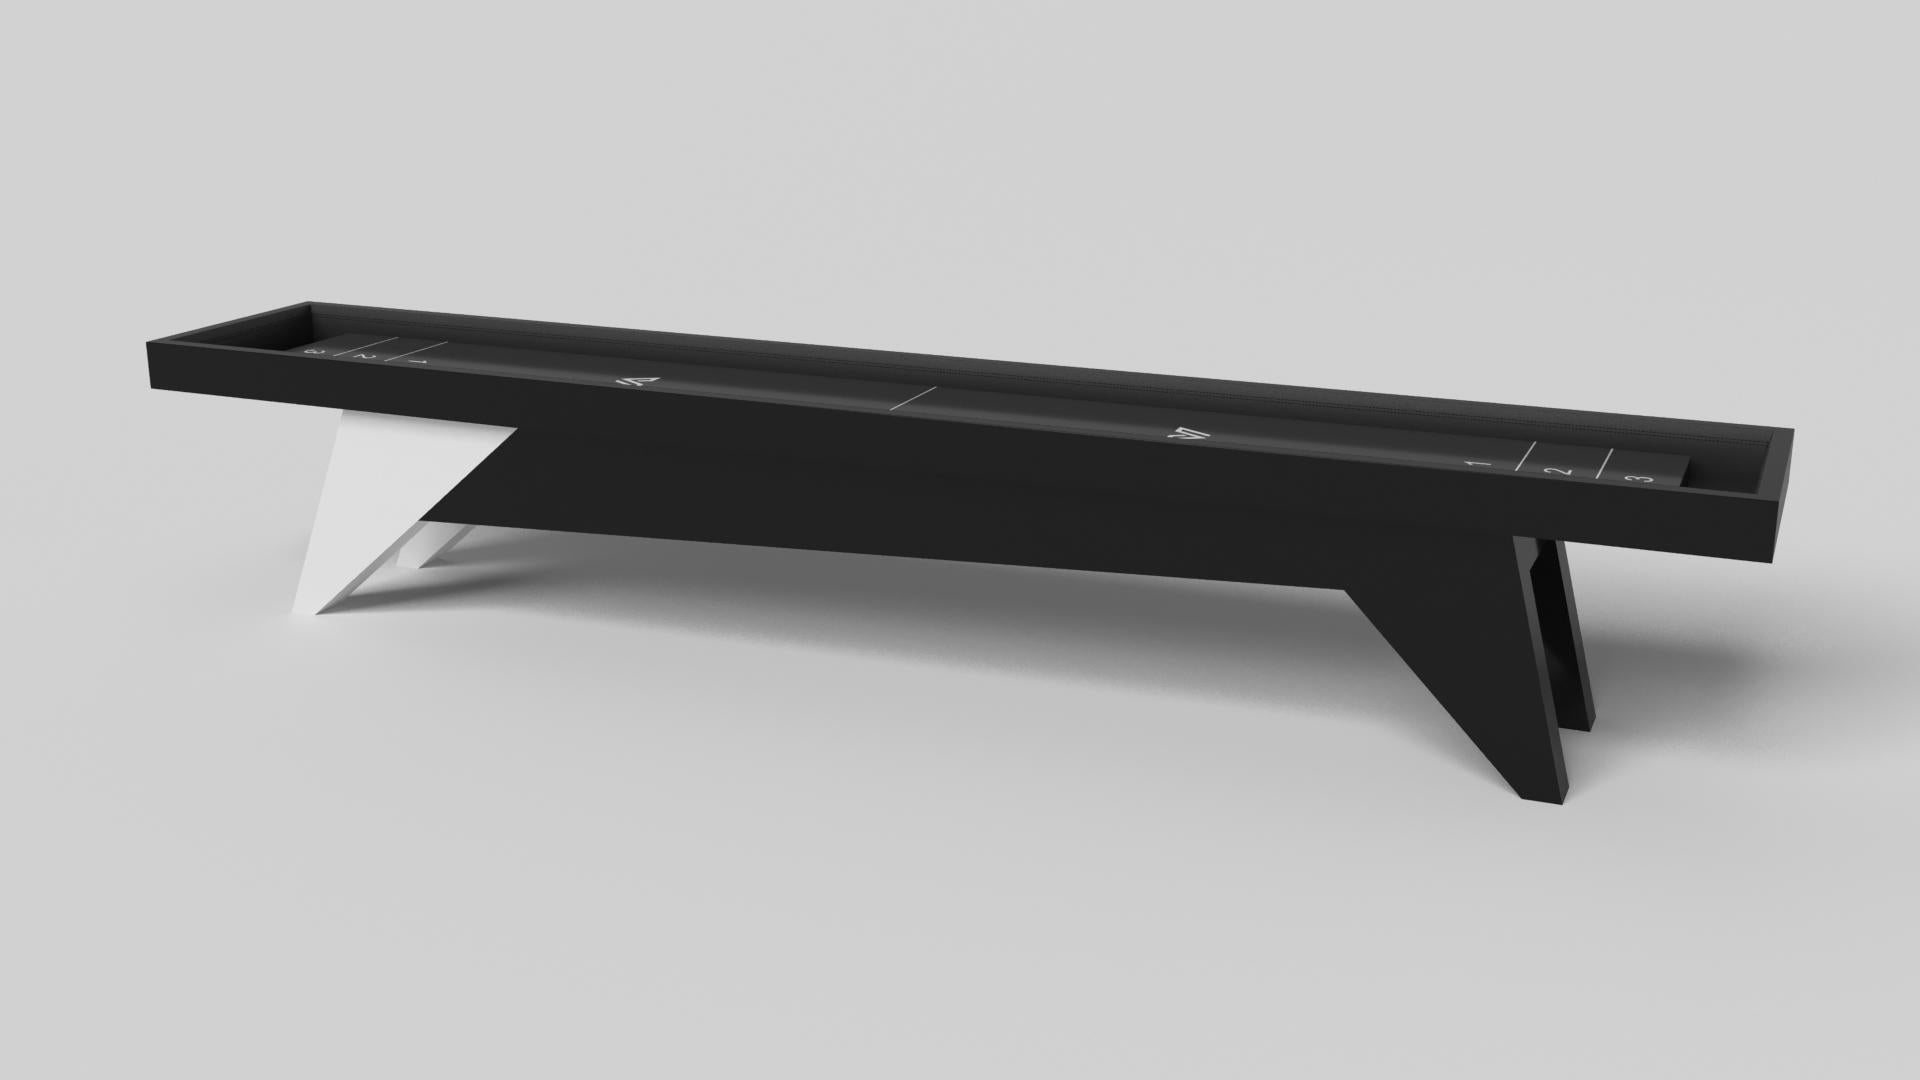 Der schlichte, aber raffinierte Shuffleboard-Tisch Mantis verleiht dem klassischen vierbeinigen Design eine frische, moderne Note. Scharfe Winkel und konisch zulaufende Beine sorgen für elegante Stabilität.

Größe:

22 Fuß - 264 